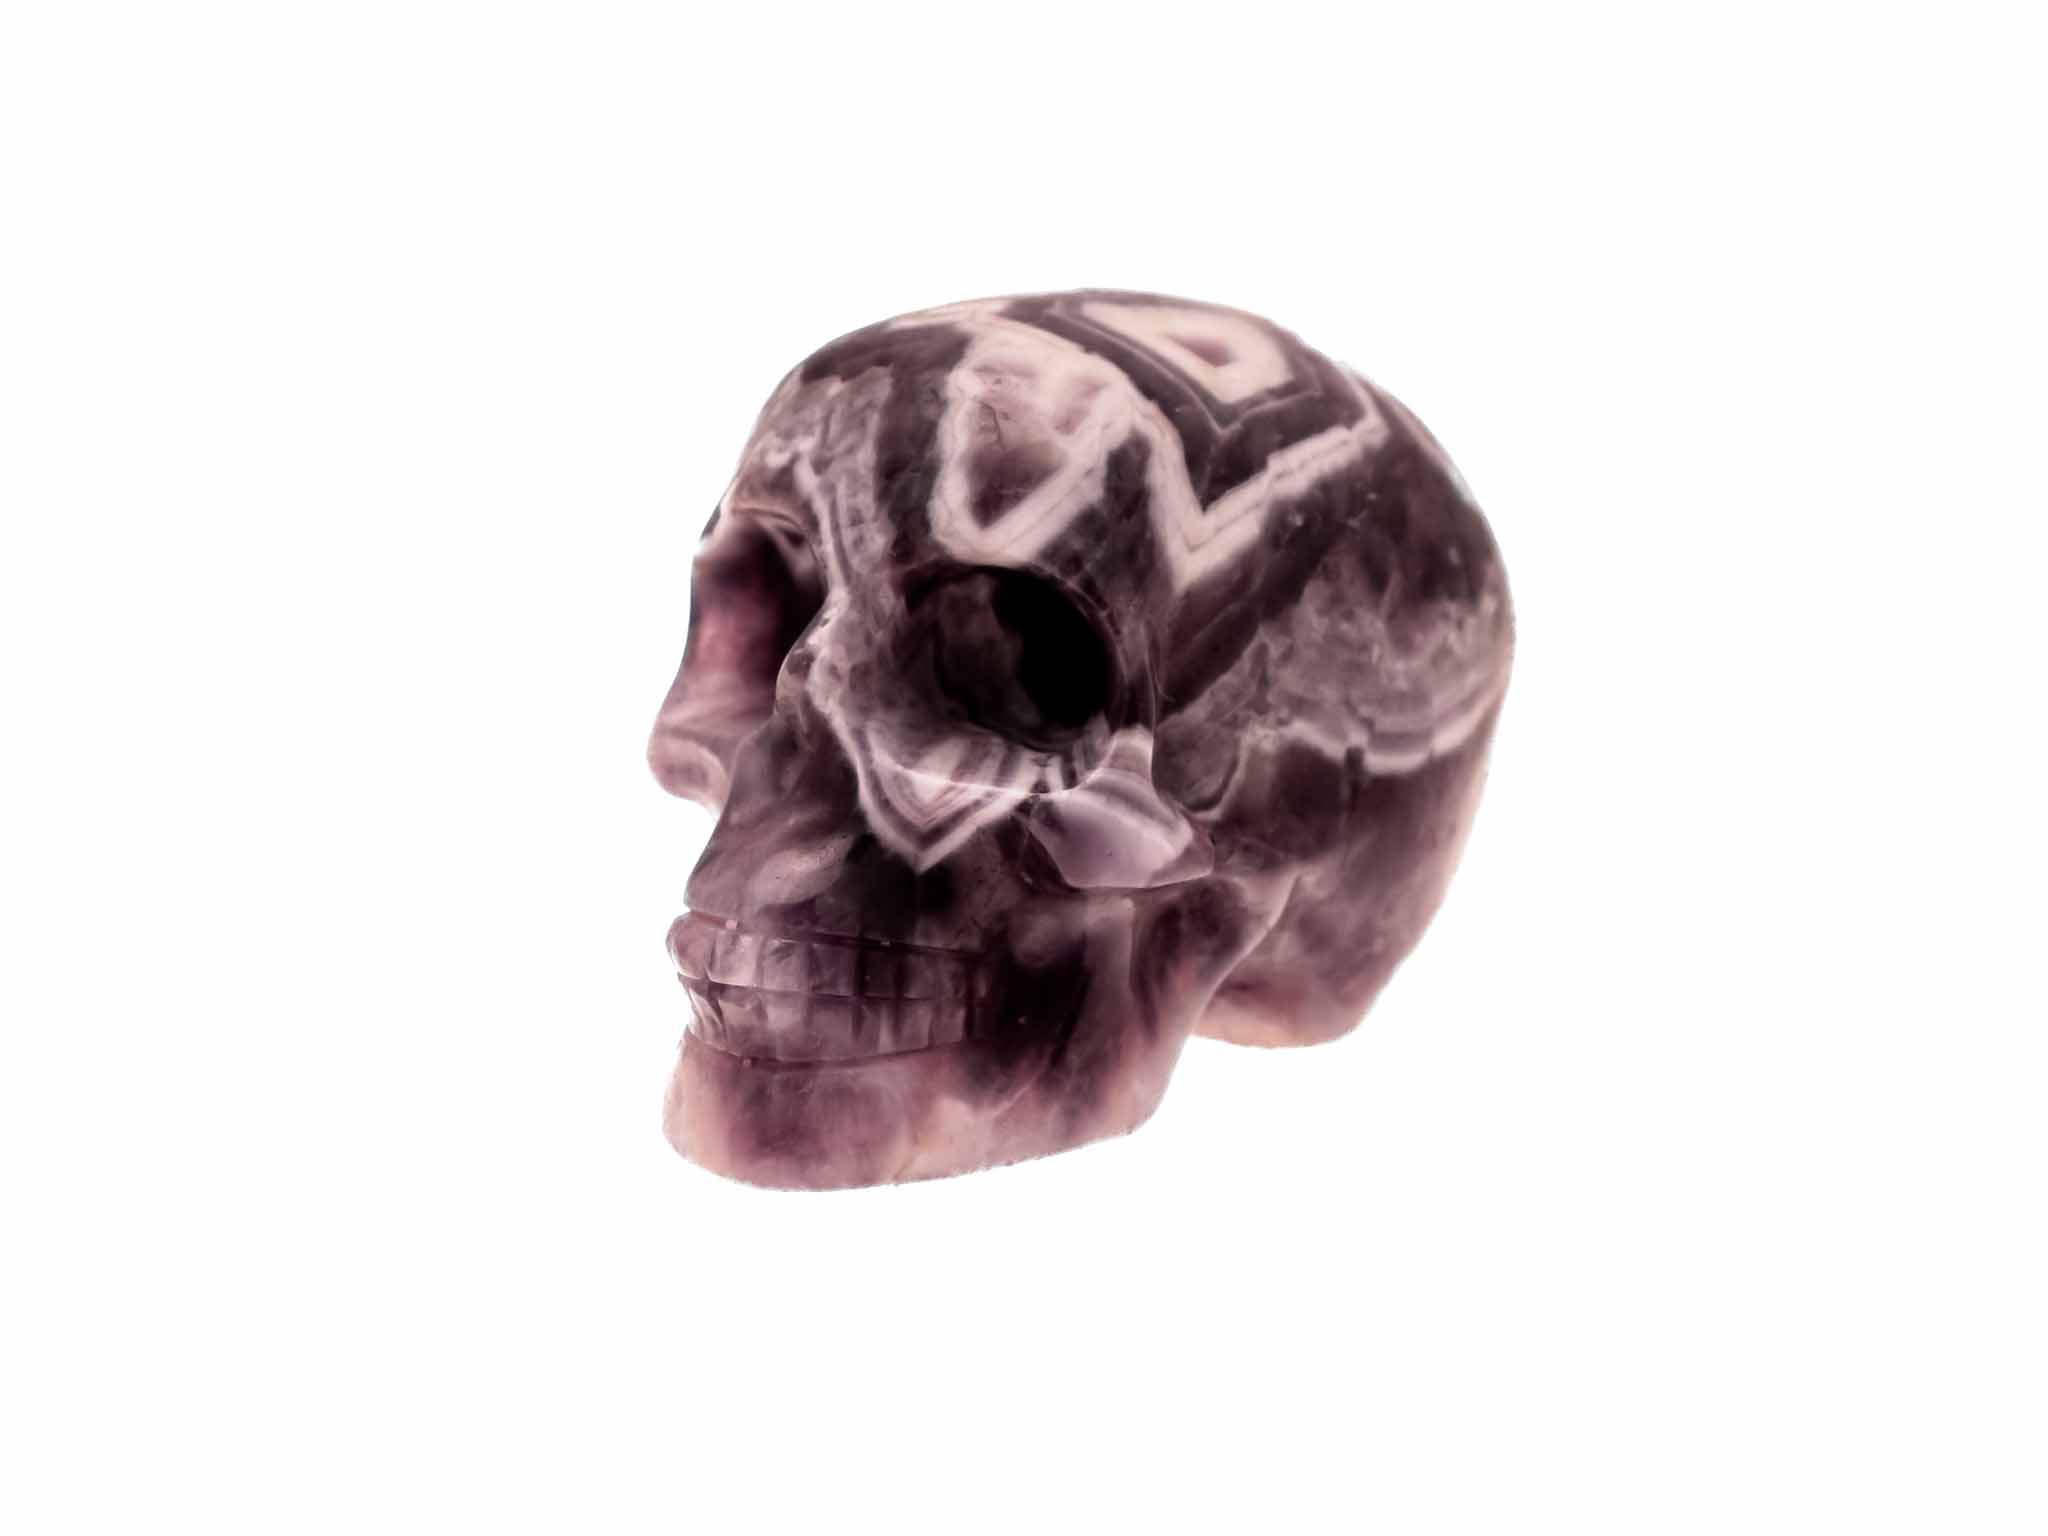 Chevron amethist schedel